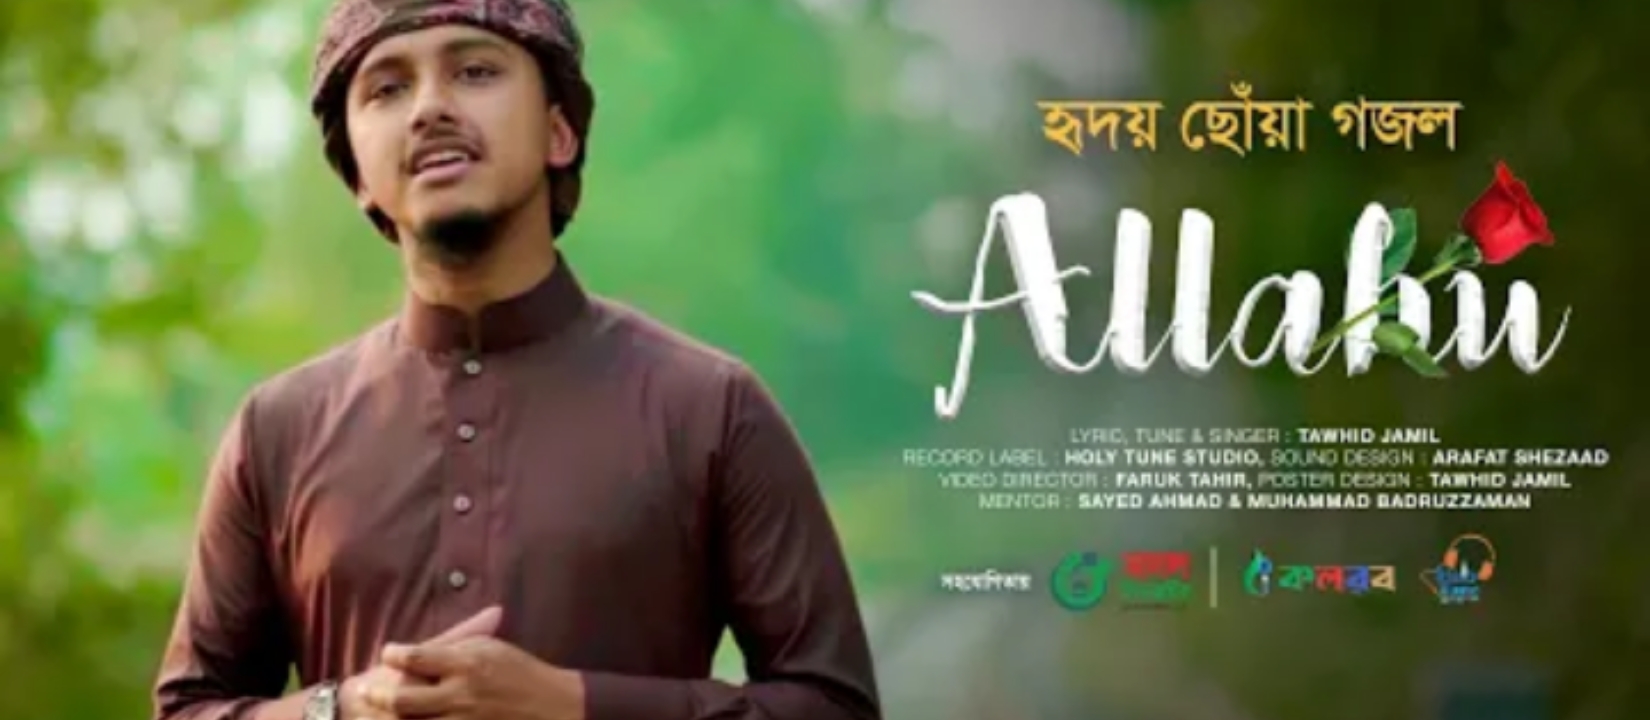 আল্লাহু আল্লাহু গজল লিরিক্স |  Allahu Allahu Gojol Lyrics